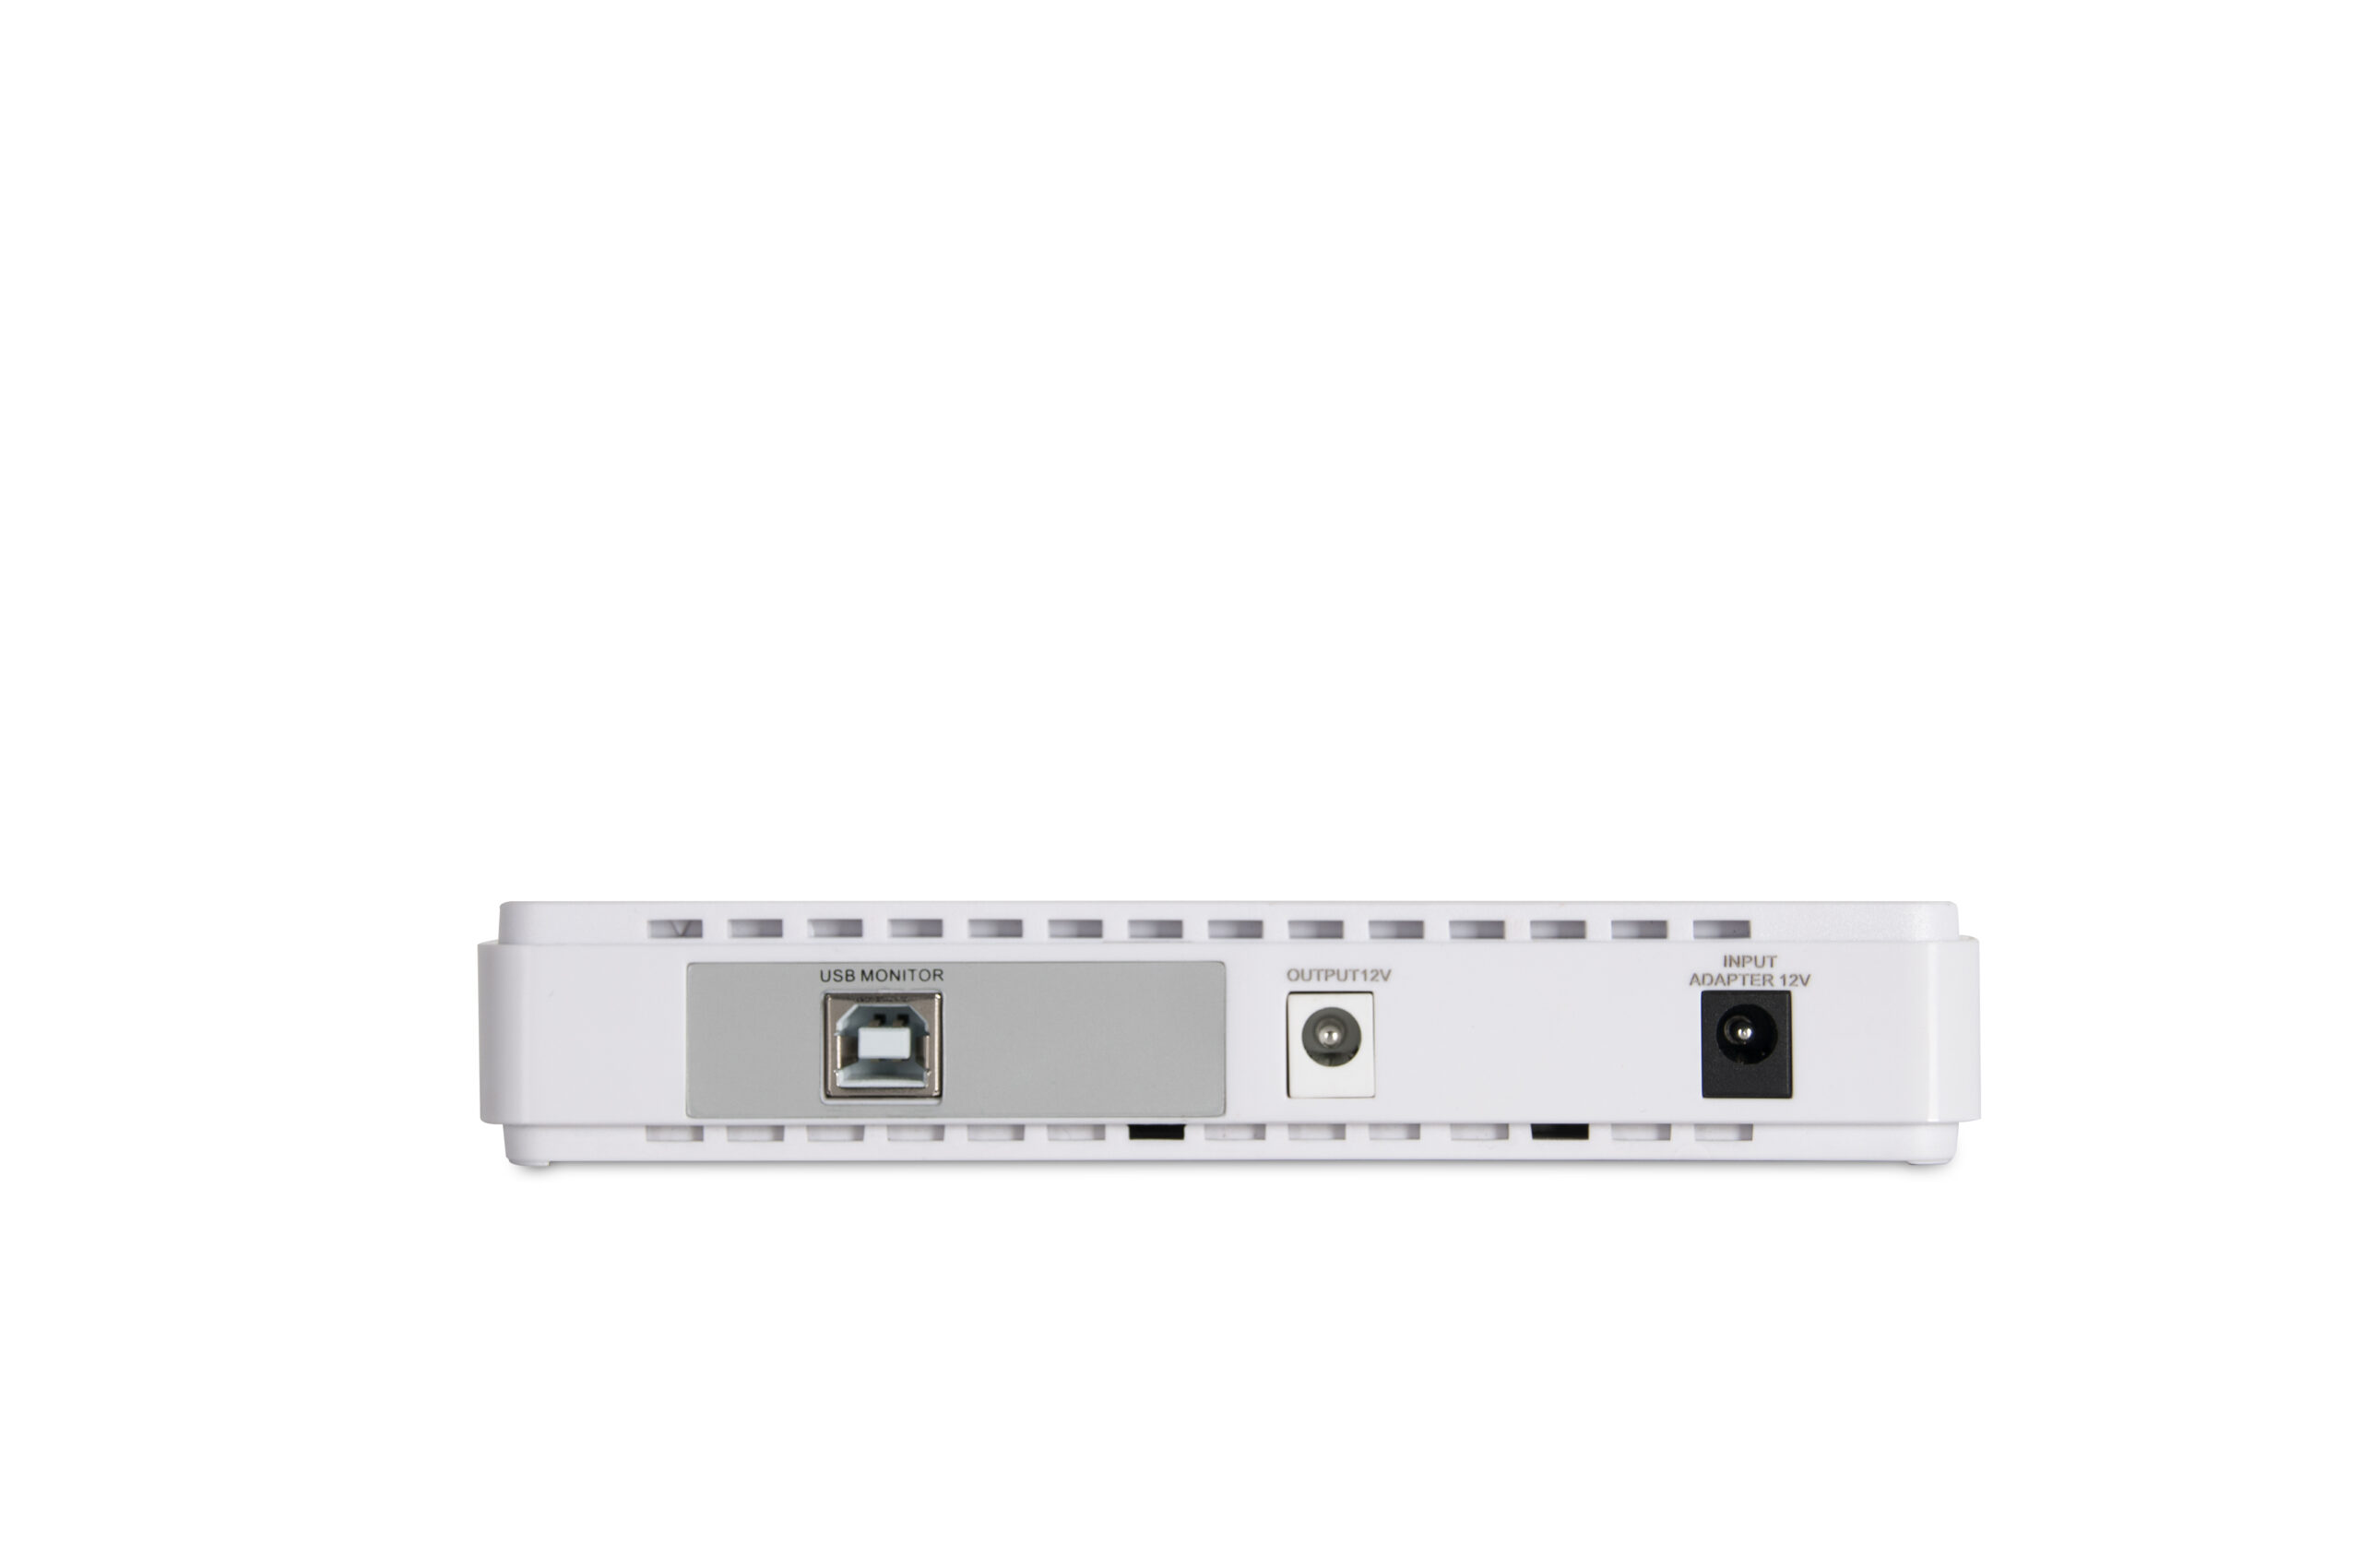 EC30-8000 Series Portable Power Bank DC UPS (30W)